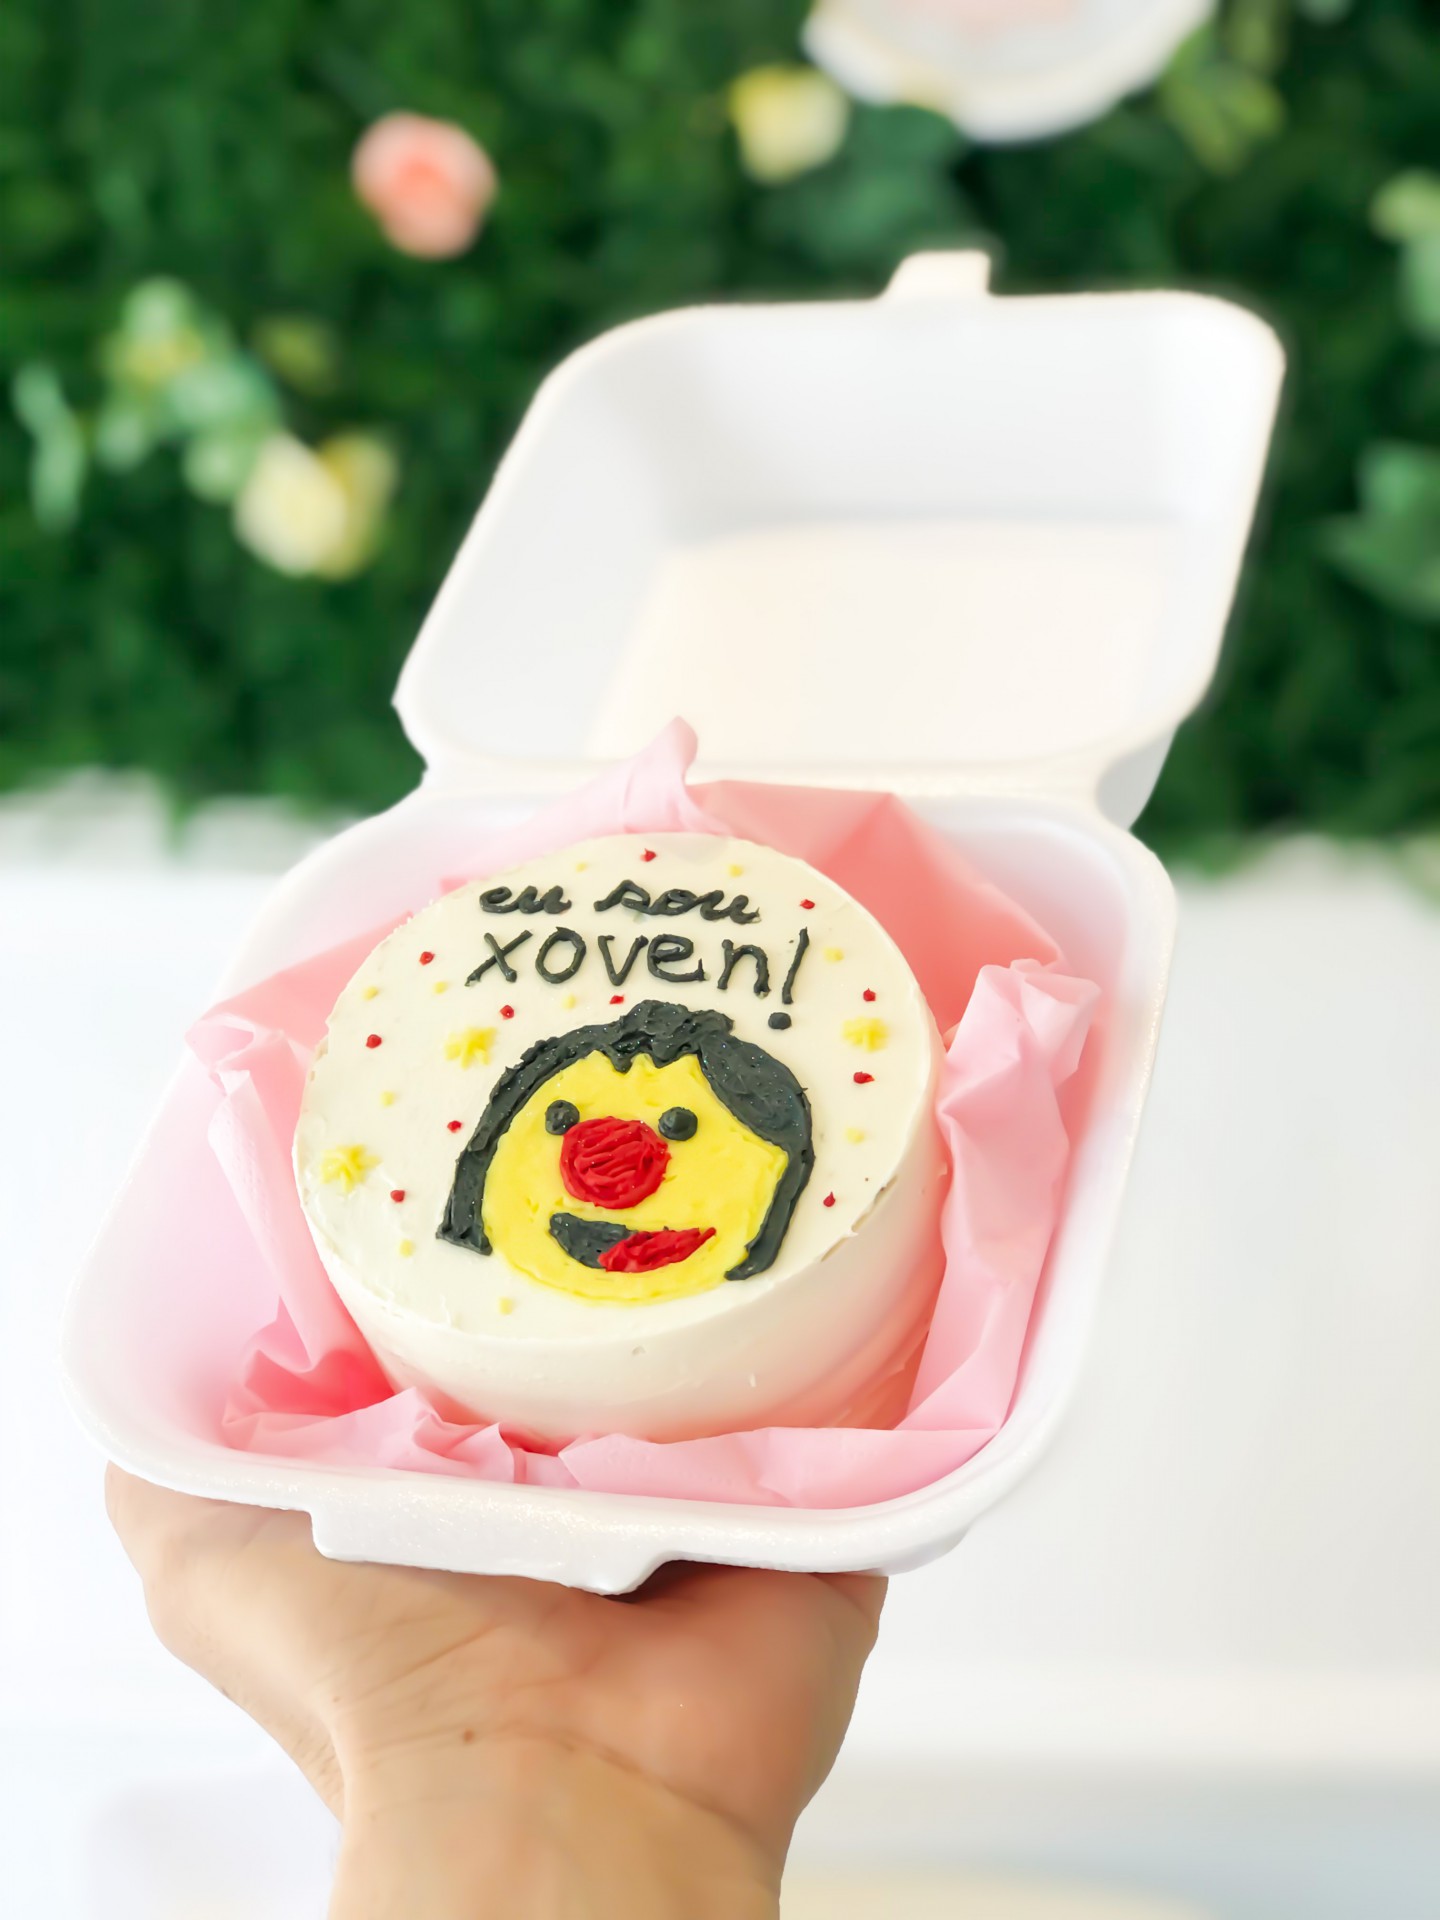 Bentô Cakes, bolos que chegam em marmitas japonesas, viralizam com frases  divertidas, memes e desenhos - Jornal O Globo